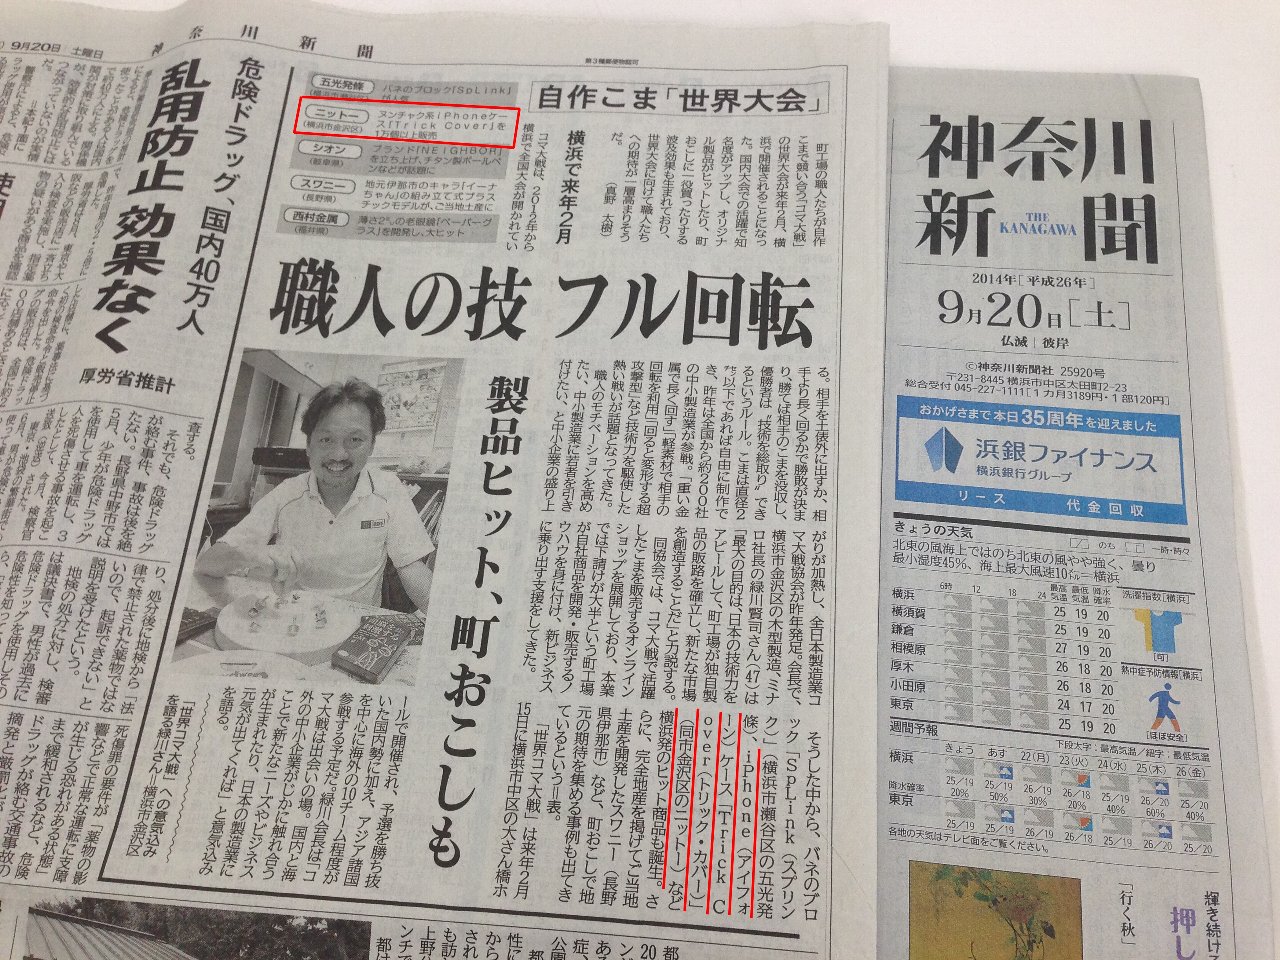 9月20日発行『神奈川新聞』に掲載